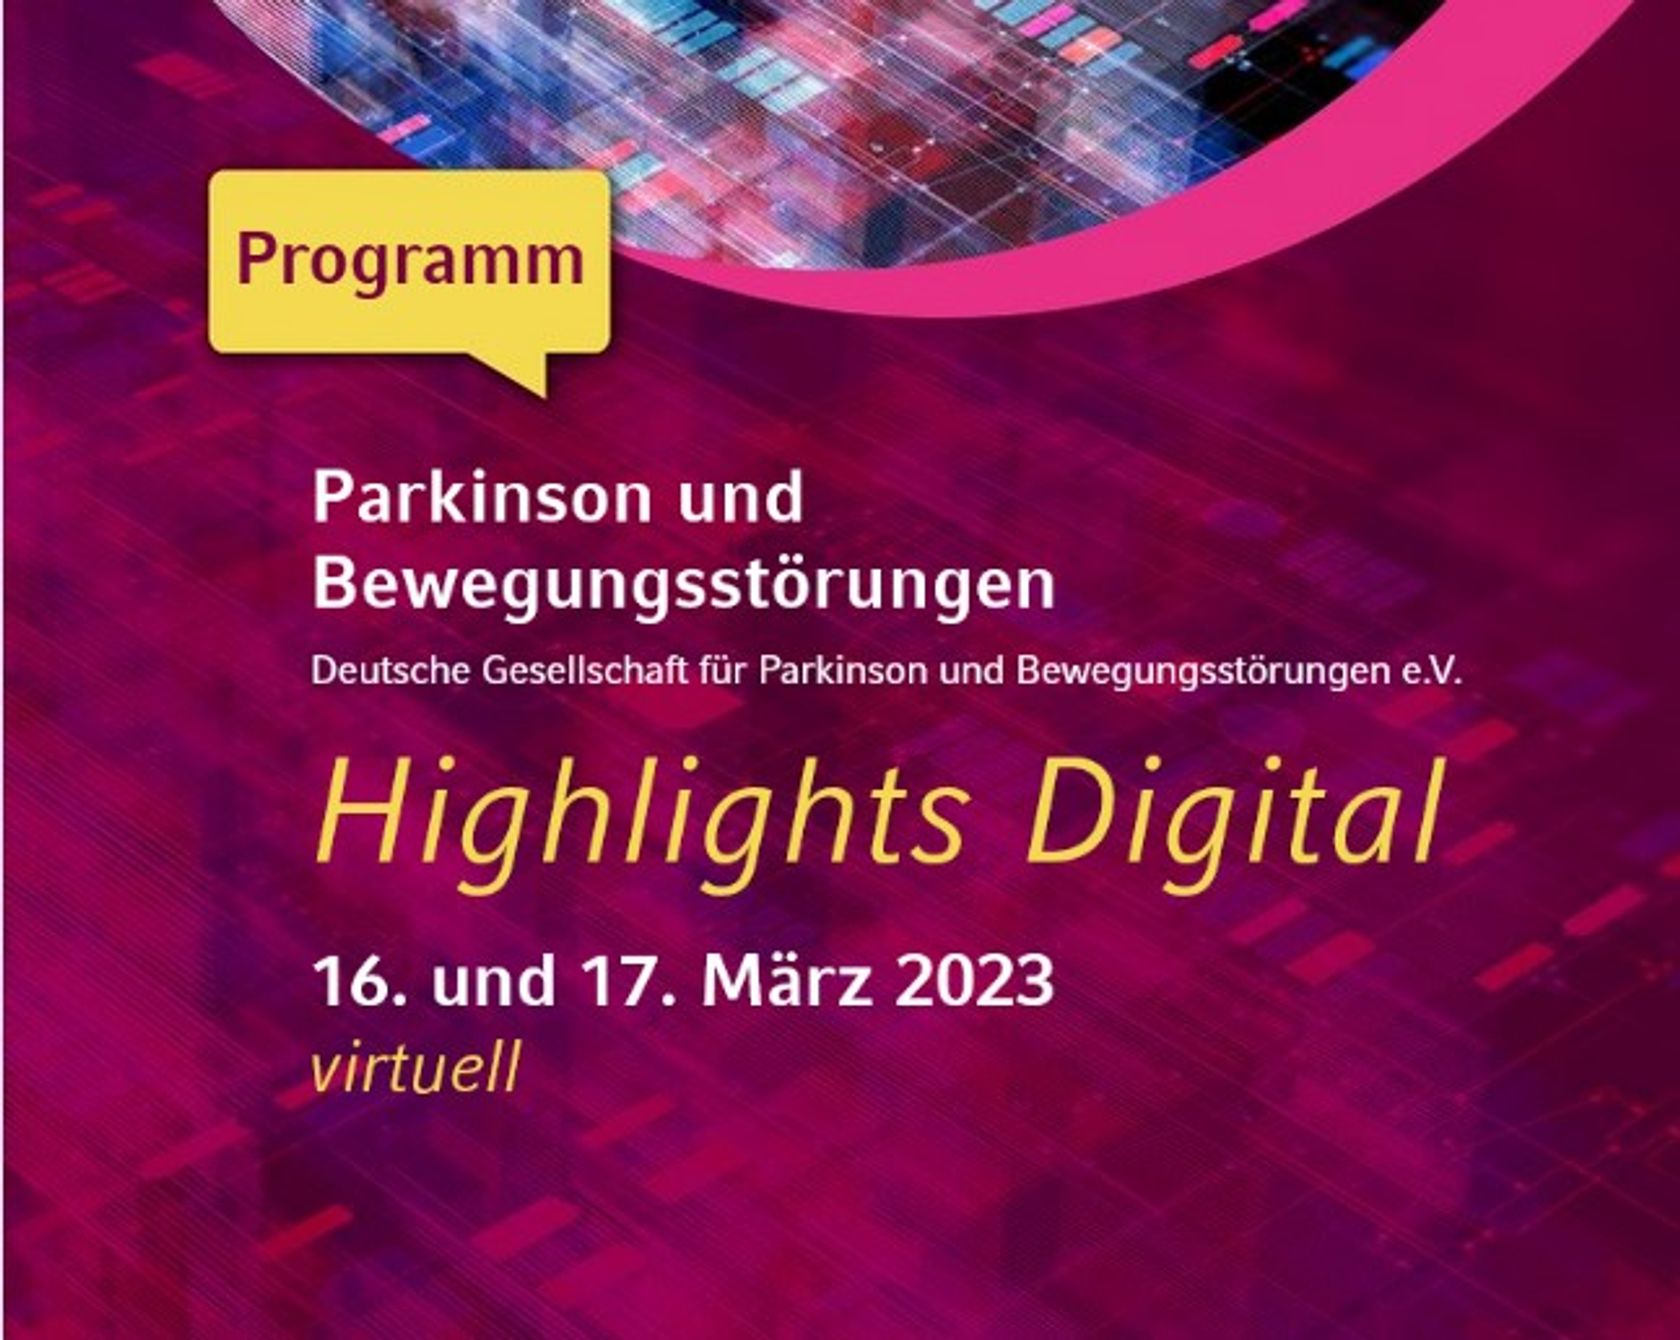 Veranstaltungslogo des Kongresses Highlights Digital der Deutschen Parkinson-Gesellschaft (DPG).